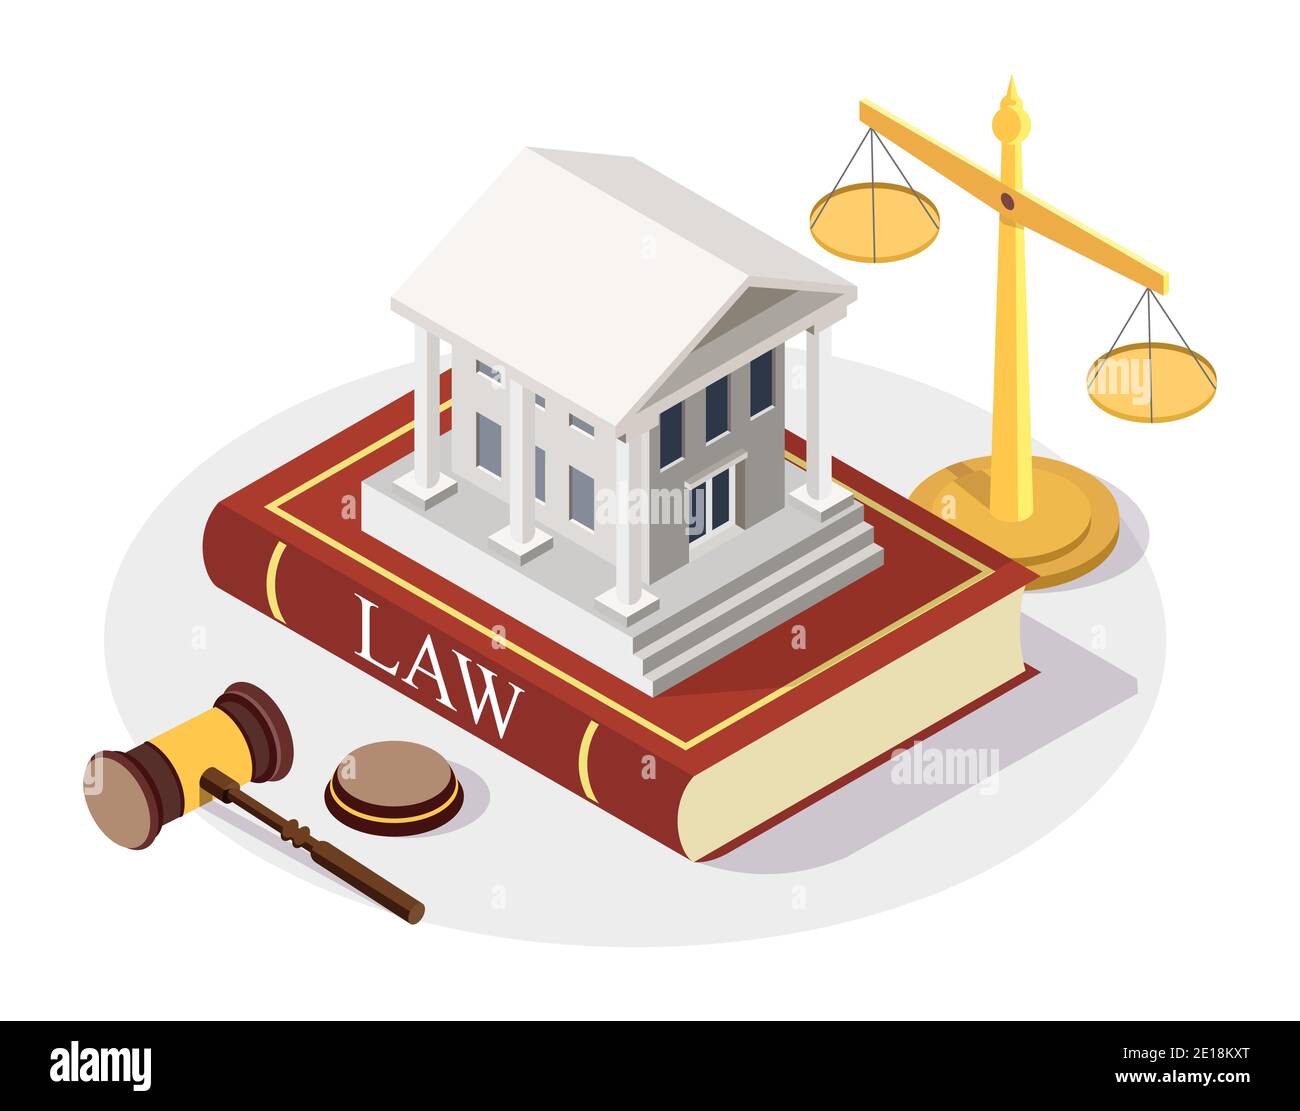 Bâtiment isométrique de cour debout sur le livre de droit, échelles de justice, gavel, illustration vectorielle plate. Tribunal d'arbitrage Illustration de Vecteur